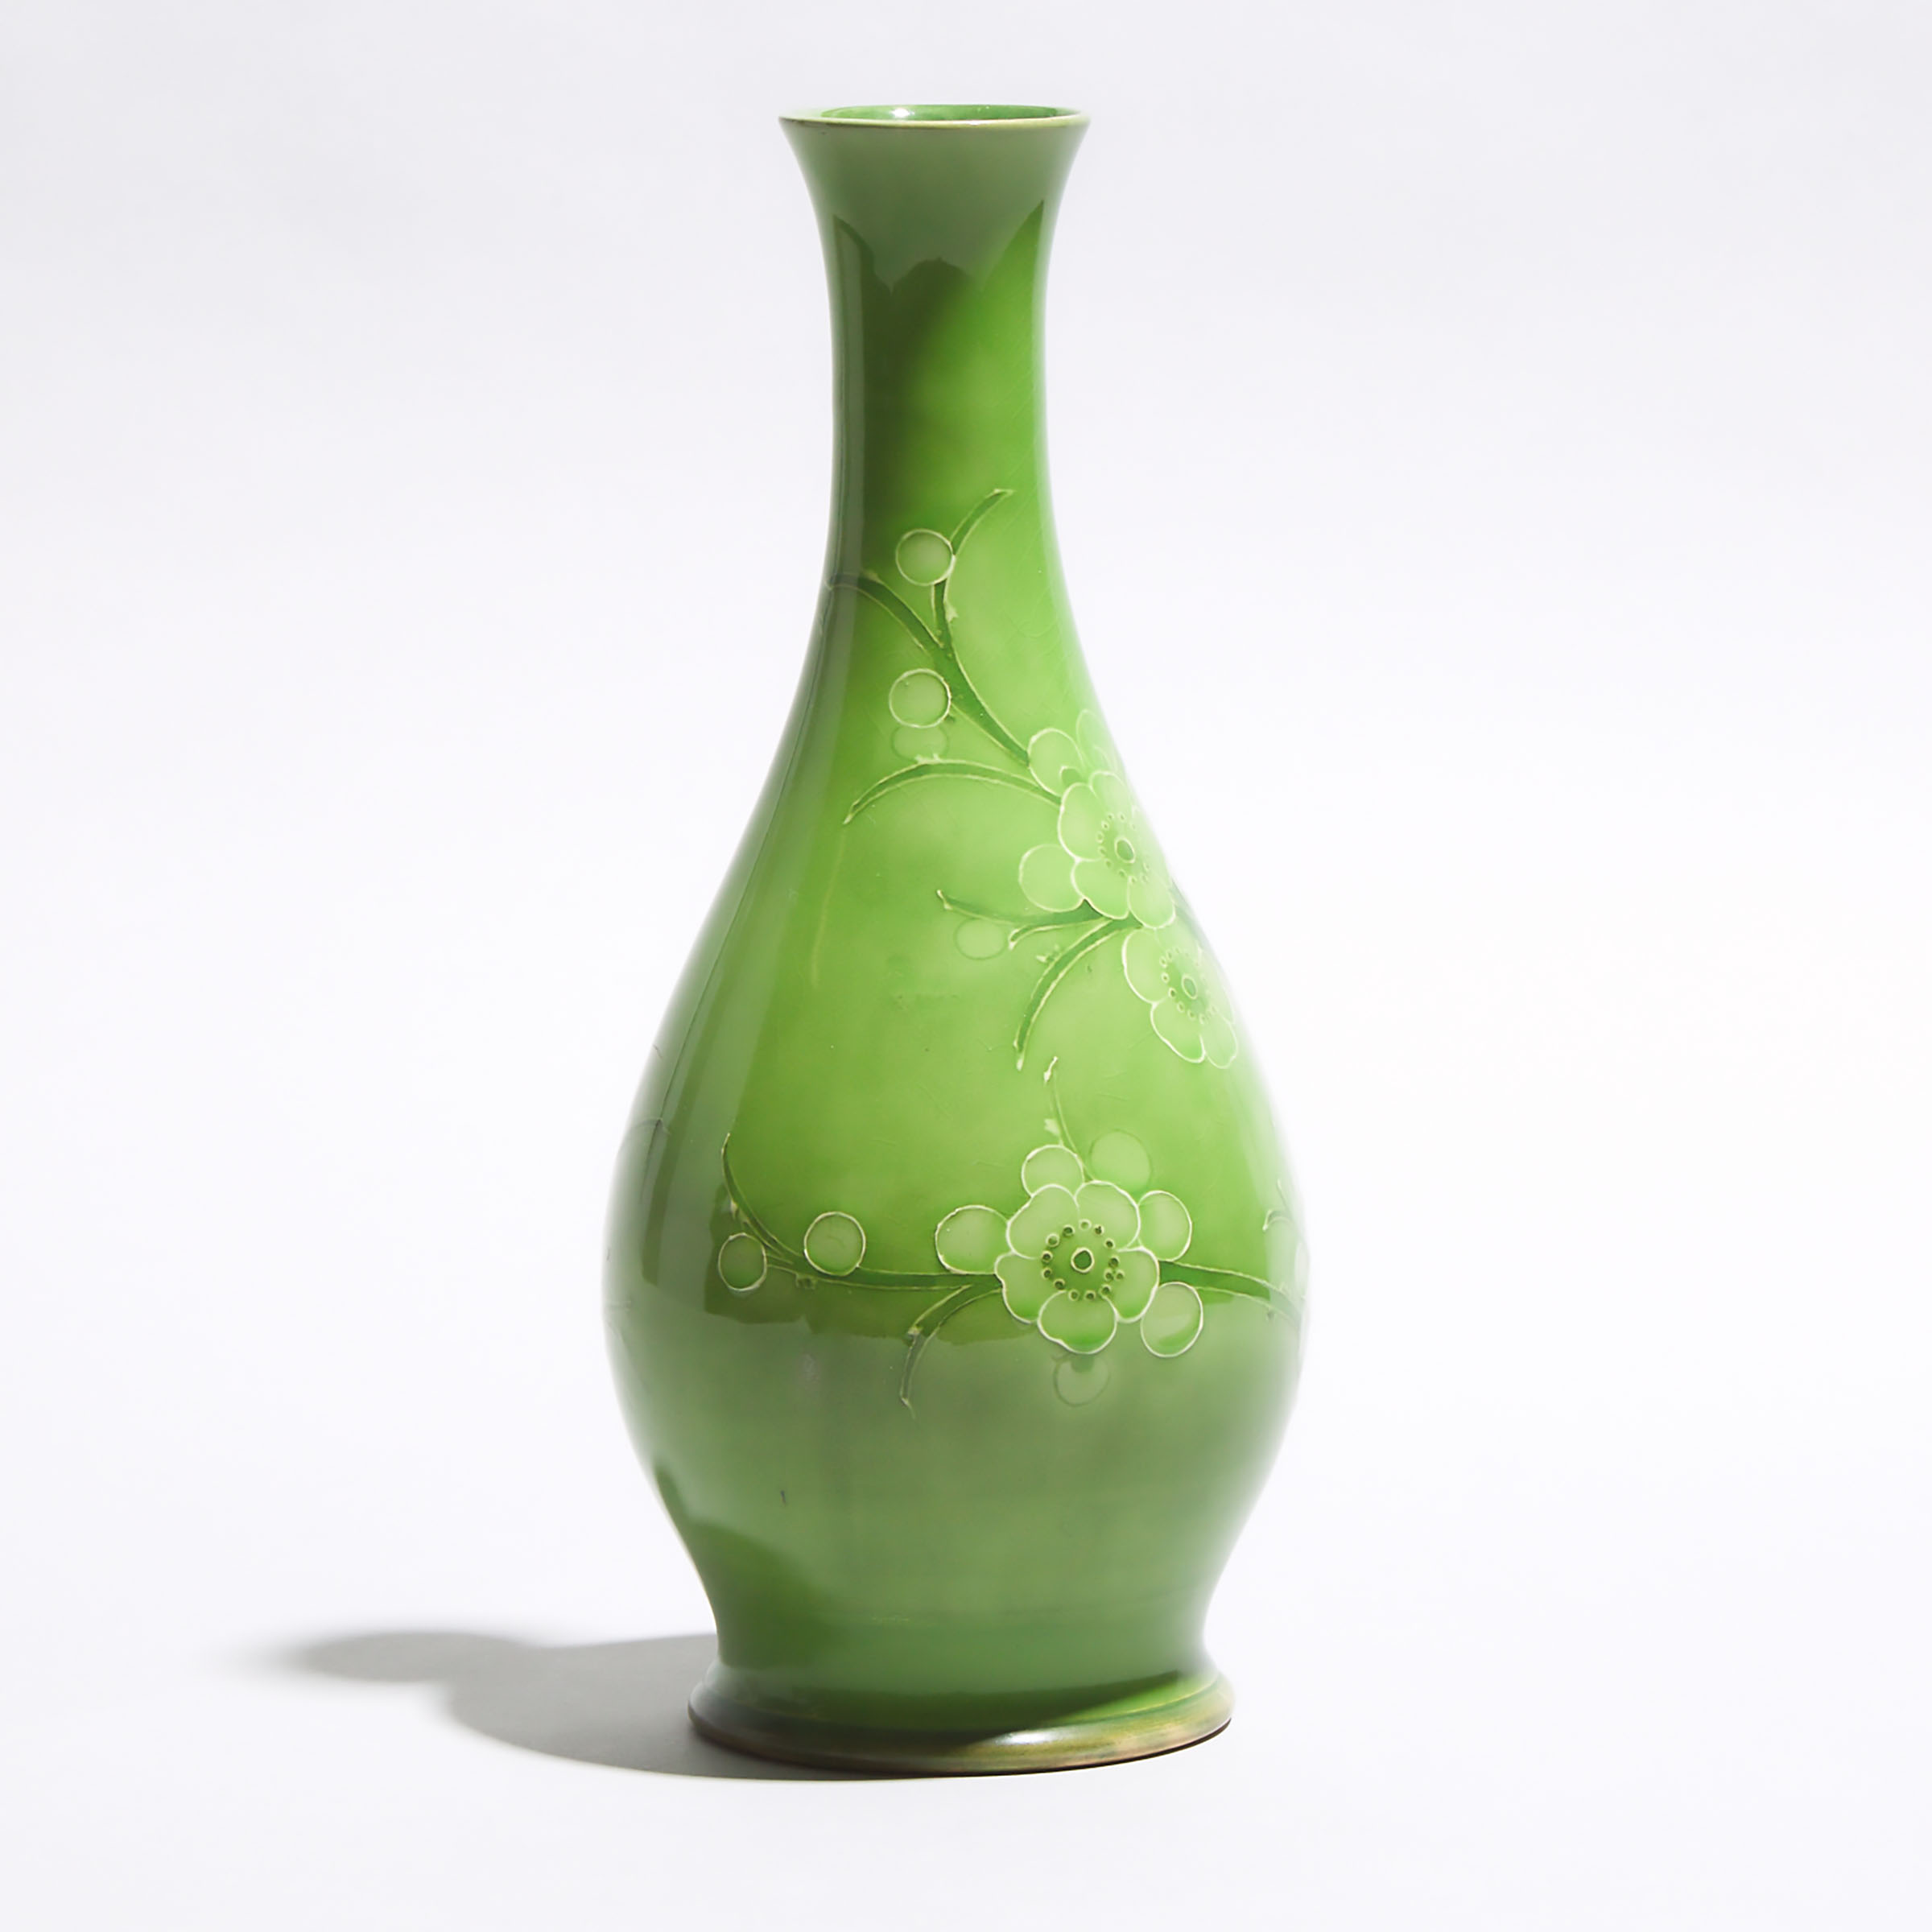 Macintyre Moorcroft Green Prunus Vase, dated 1912